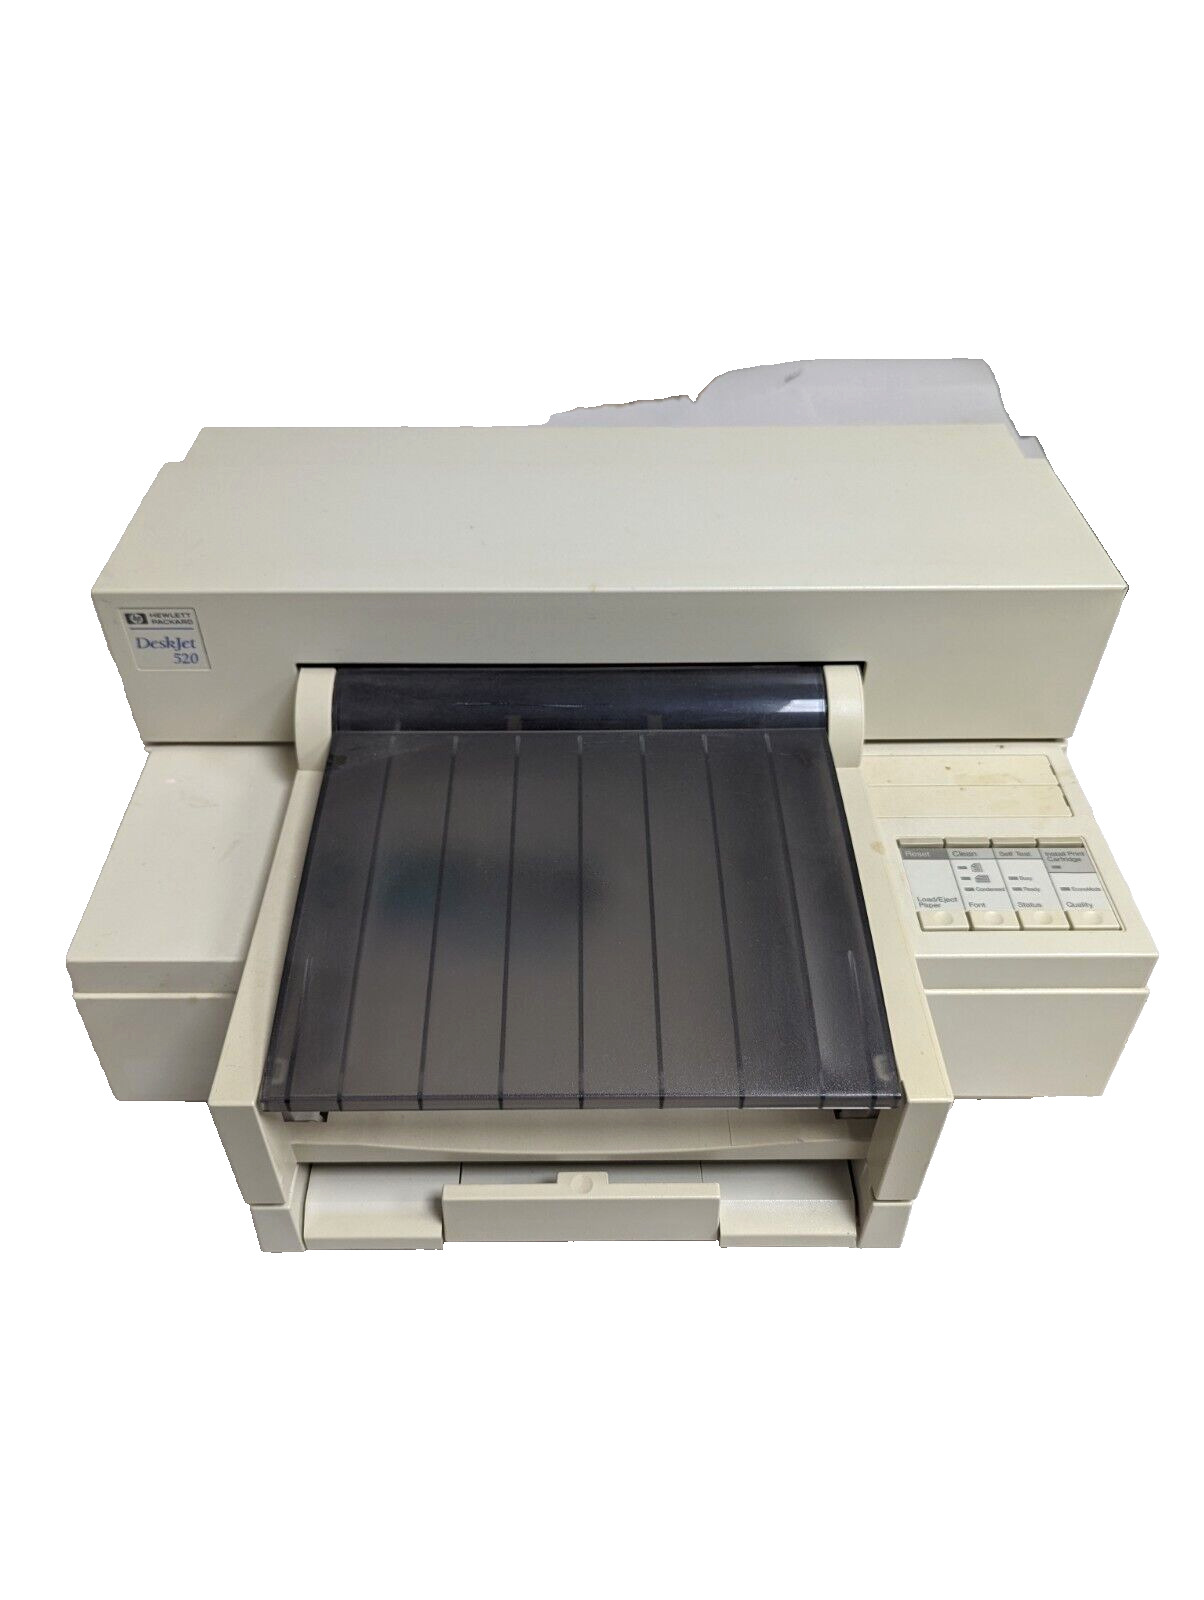 HP DeskWriter 520 Inkjet Printer For Mac Vintage 1994 NOT TESTED NO CORD Prop